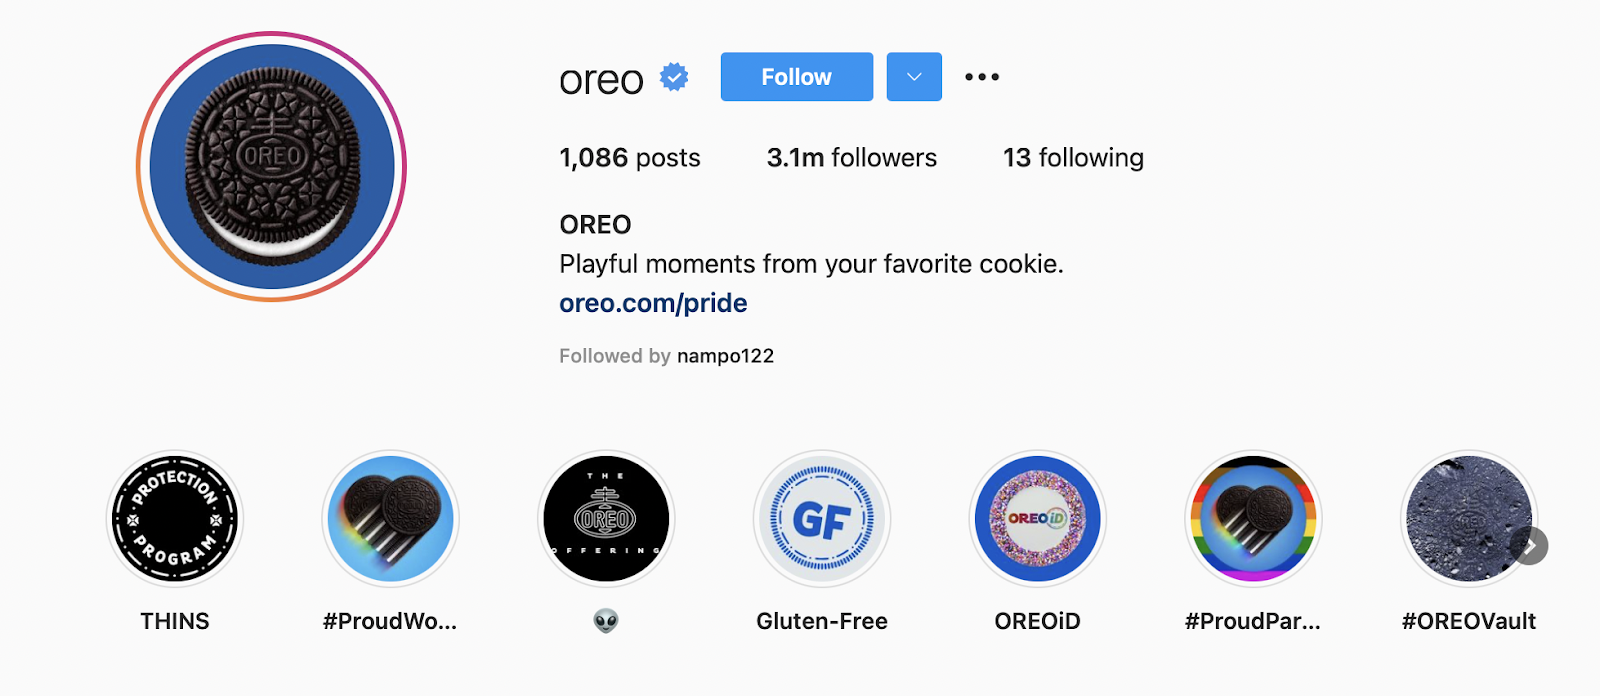 How to write instagram bio - oreo 